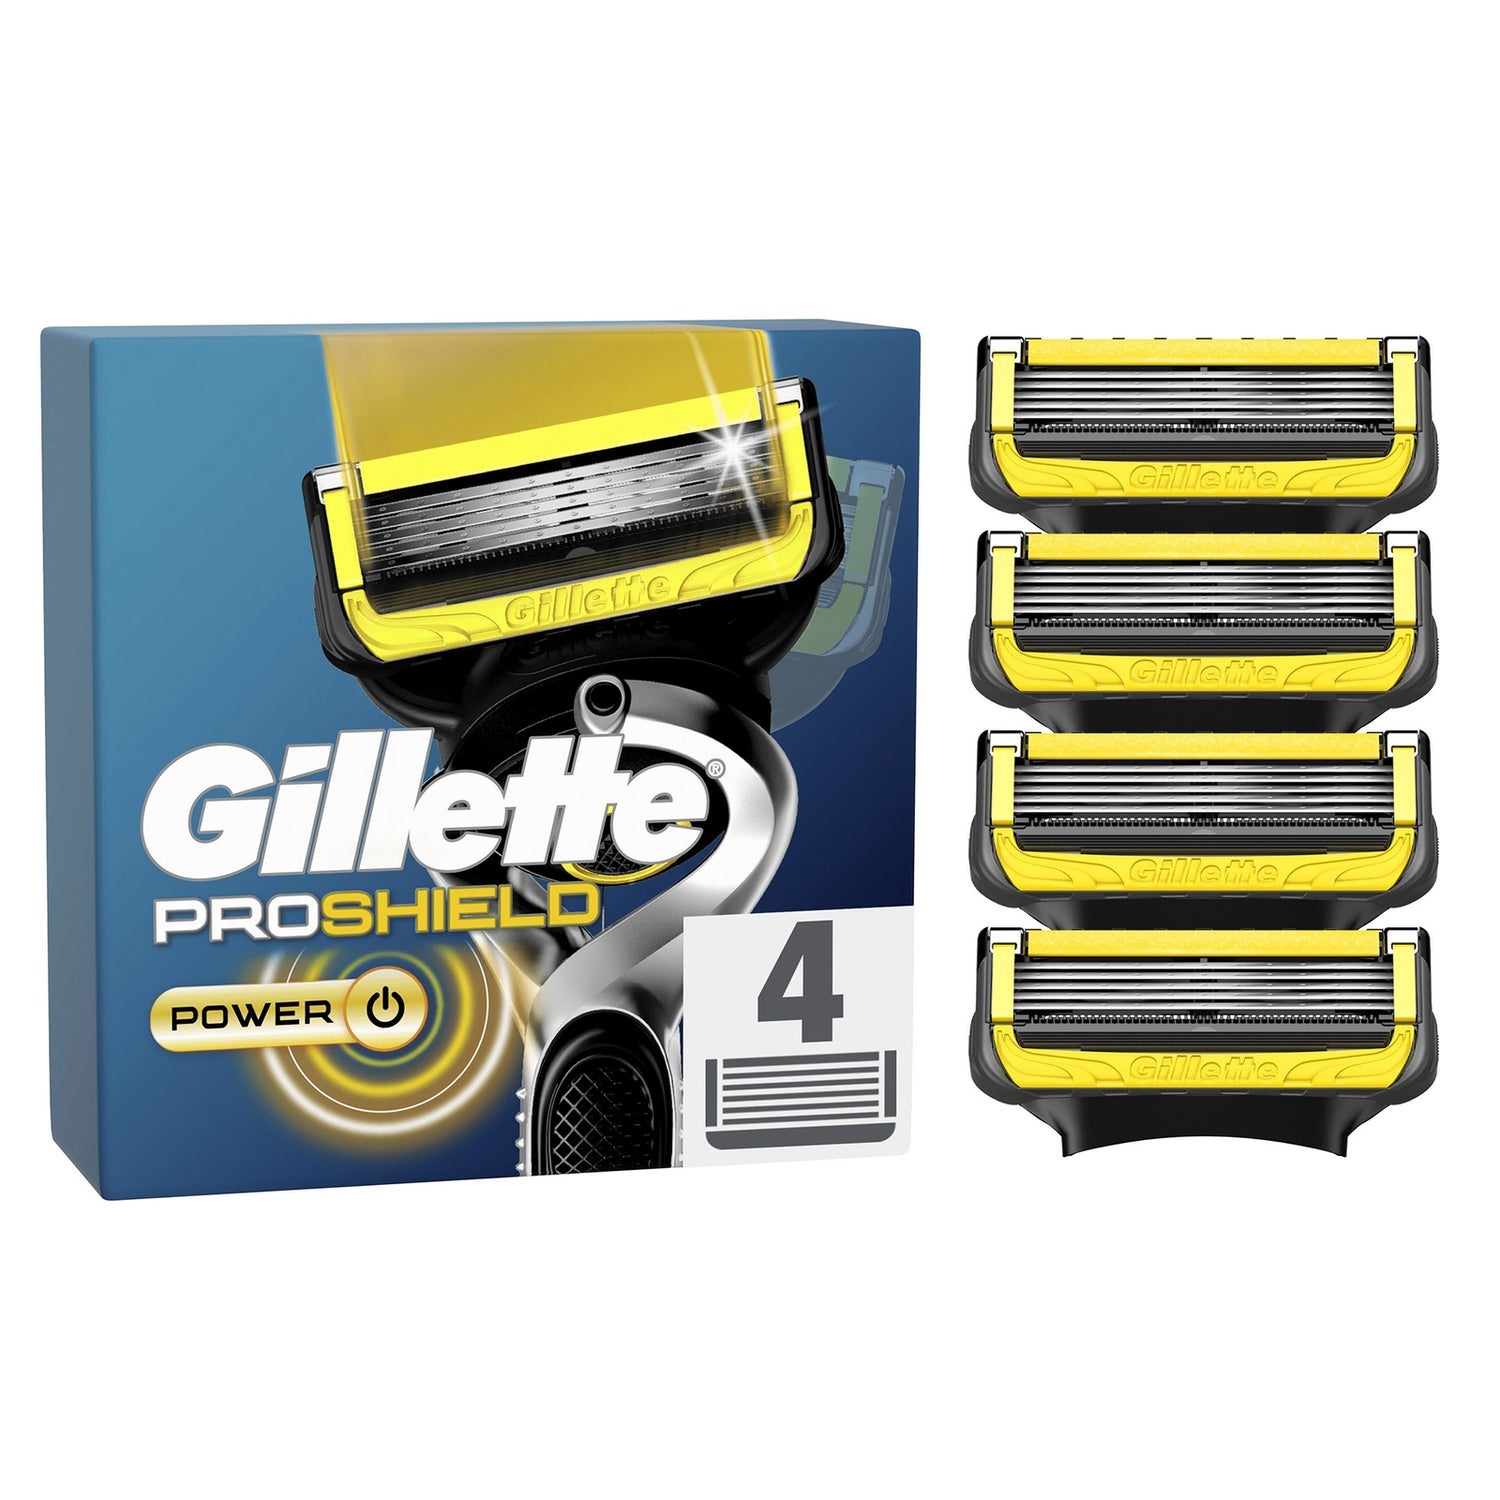 Gillette ProShield Power Razor Blades